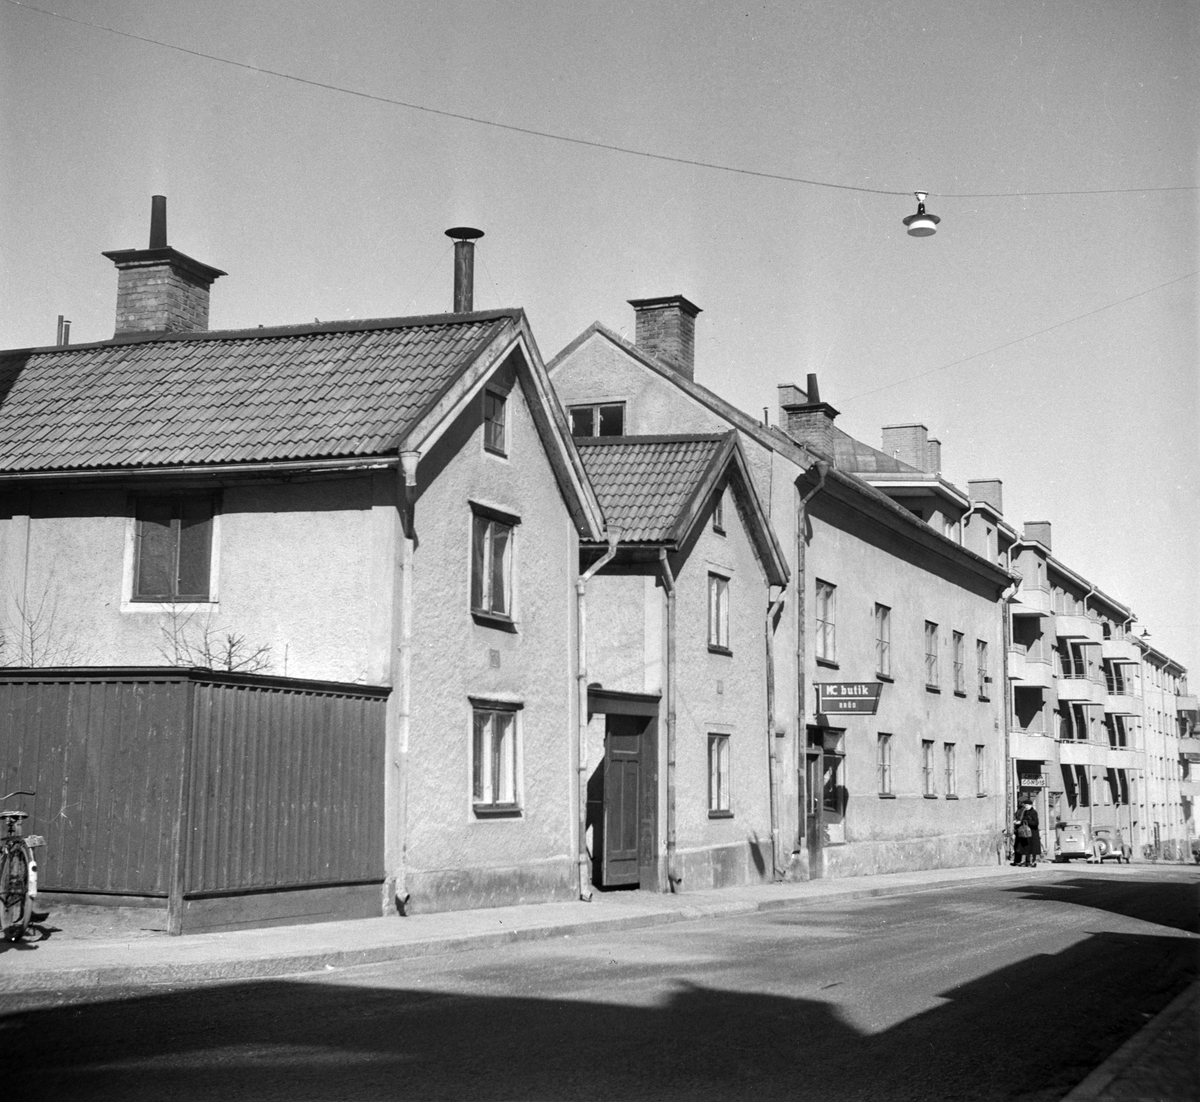 Smedjegatan 39 - 43 i kvarteret Karbinen, Norrköping. Byggnaderna i båtshusmanstil var byggda 1839 respektive 1842. Hörnhuset bortom båtmansstugorna uppfördes redan 1828. Fotografiet är taget i samband med rivningsansökan 1951. Vy mot norr.